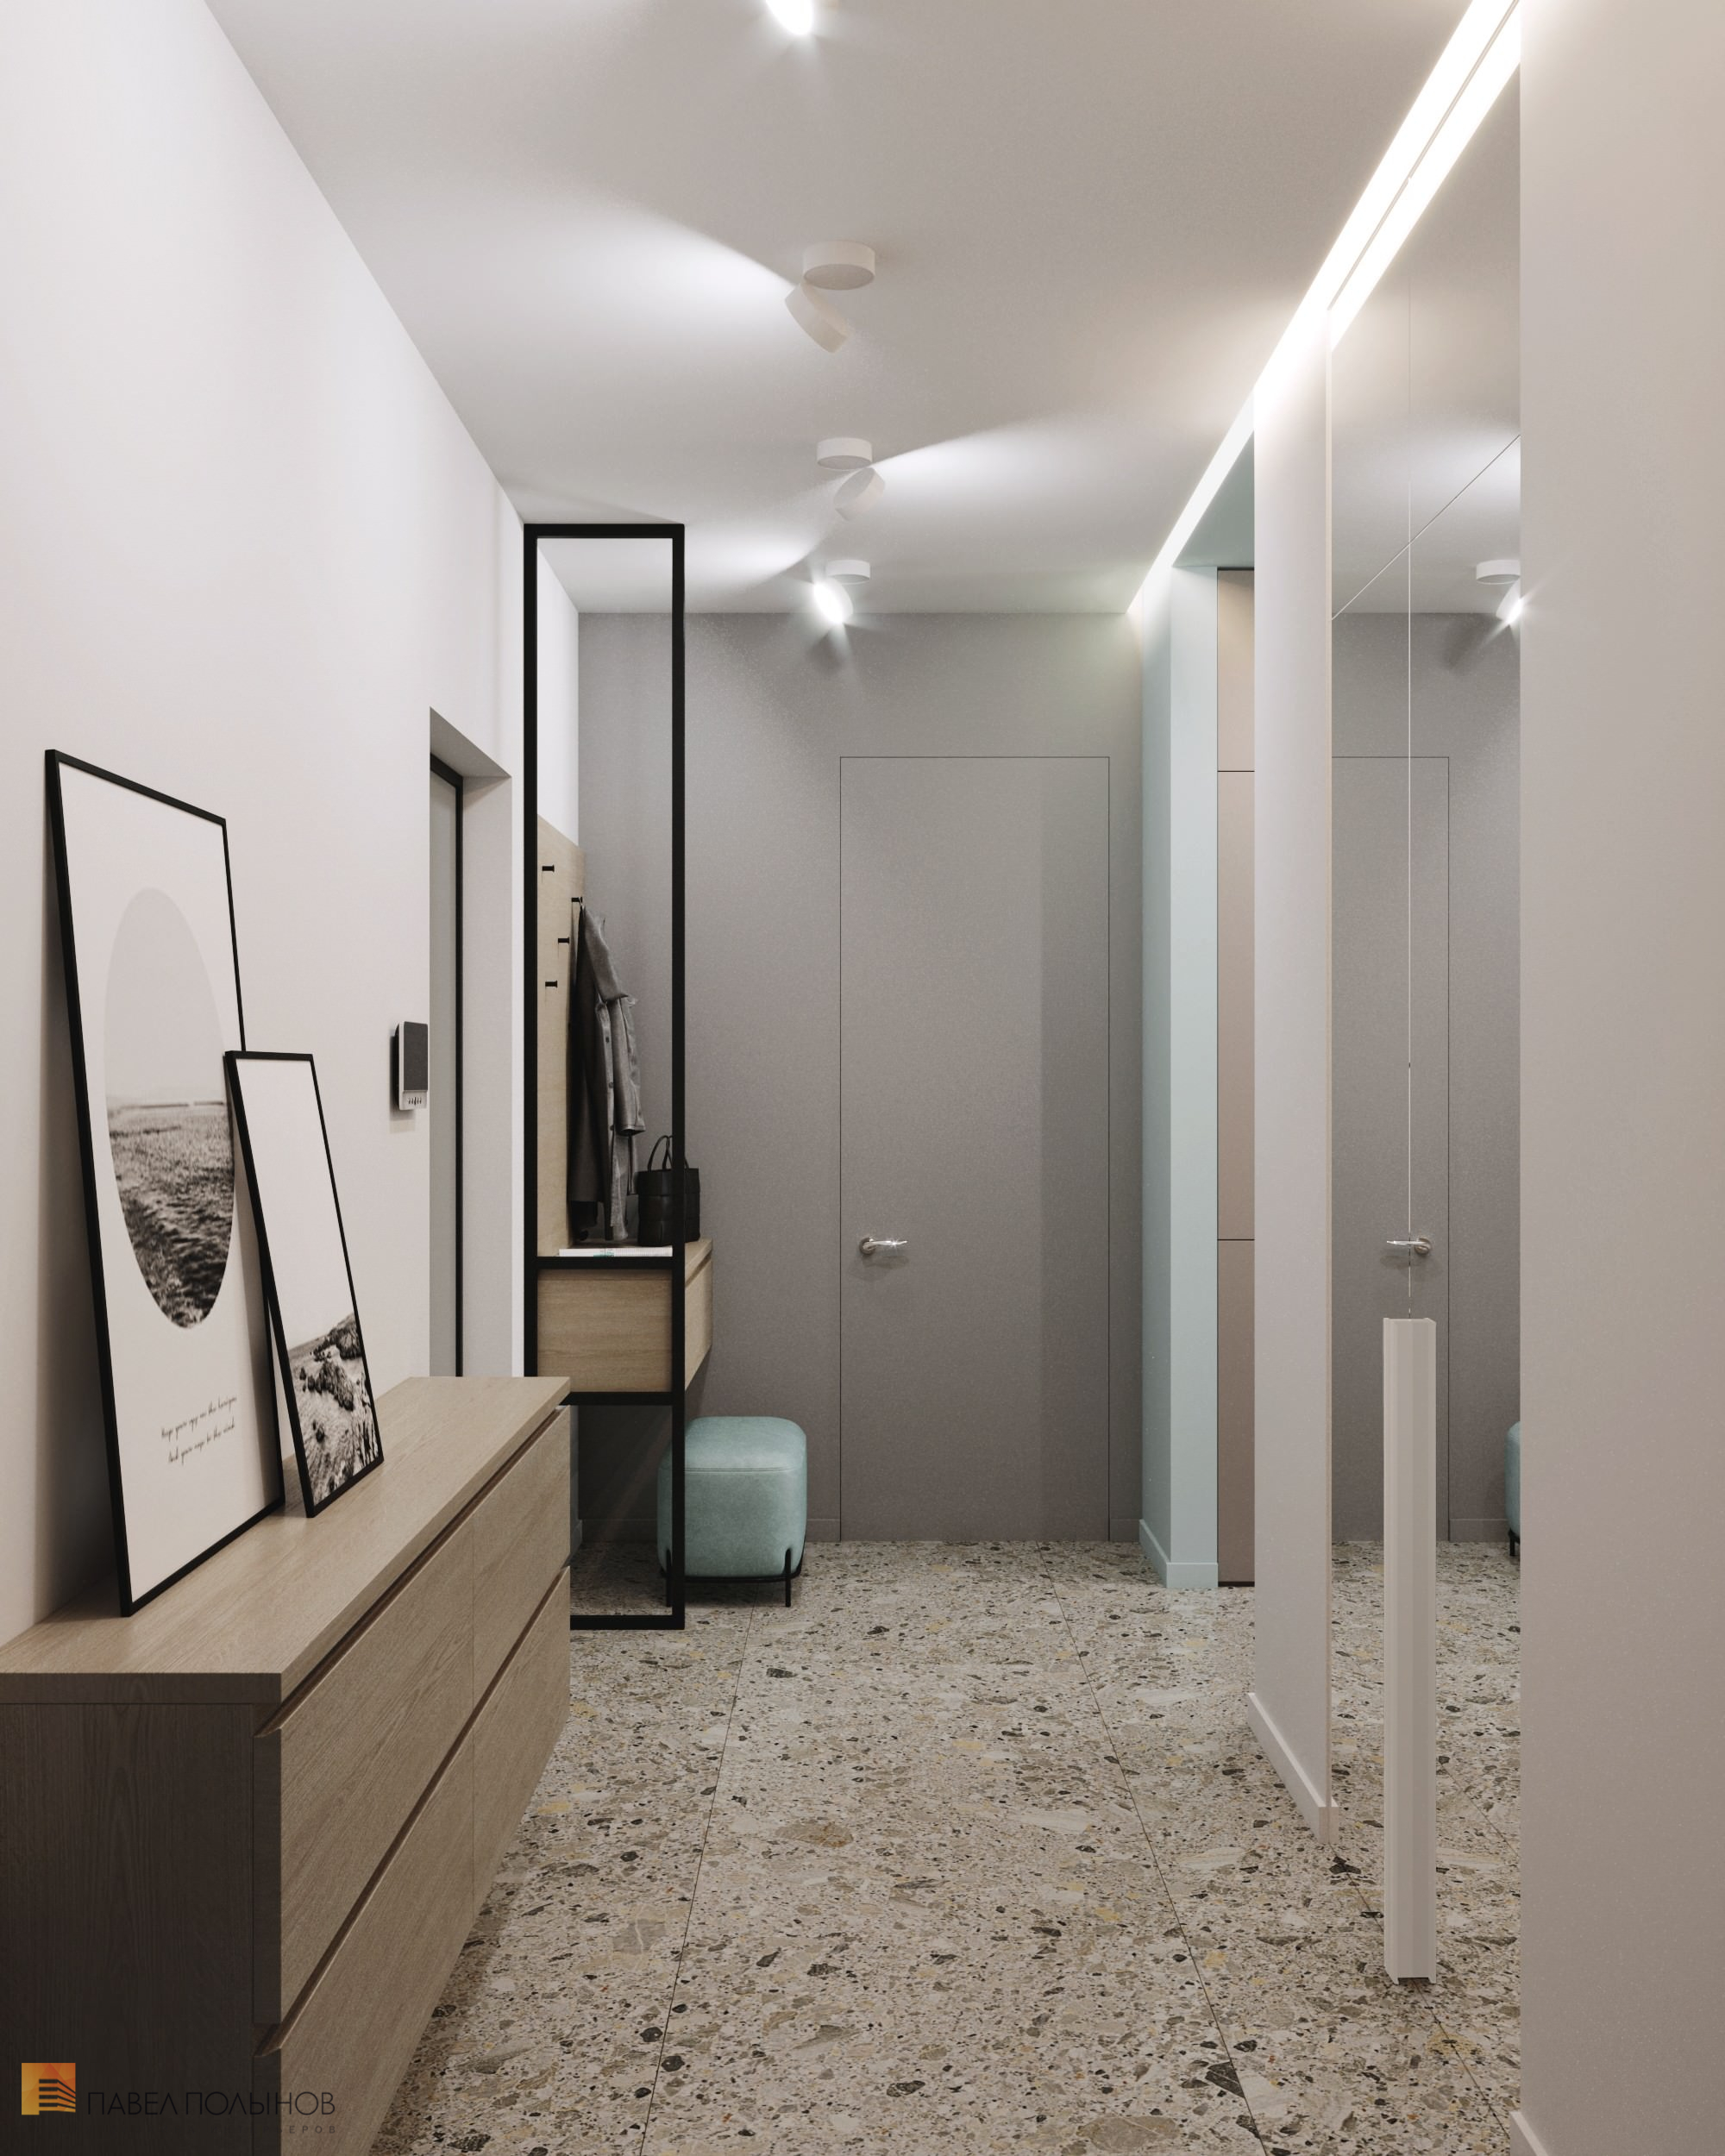 Фото дизайн коридора из проекта «Дизайн интерьера квартиры в ЖК «5 Звёзд», минимализм, 117 кв.м.»